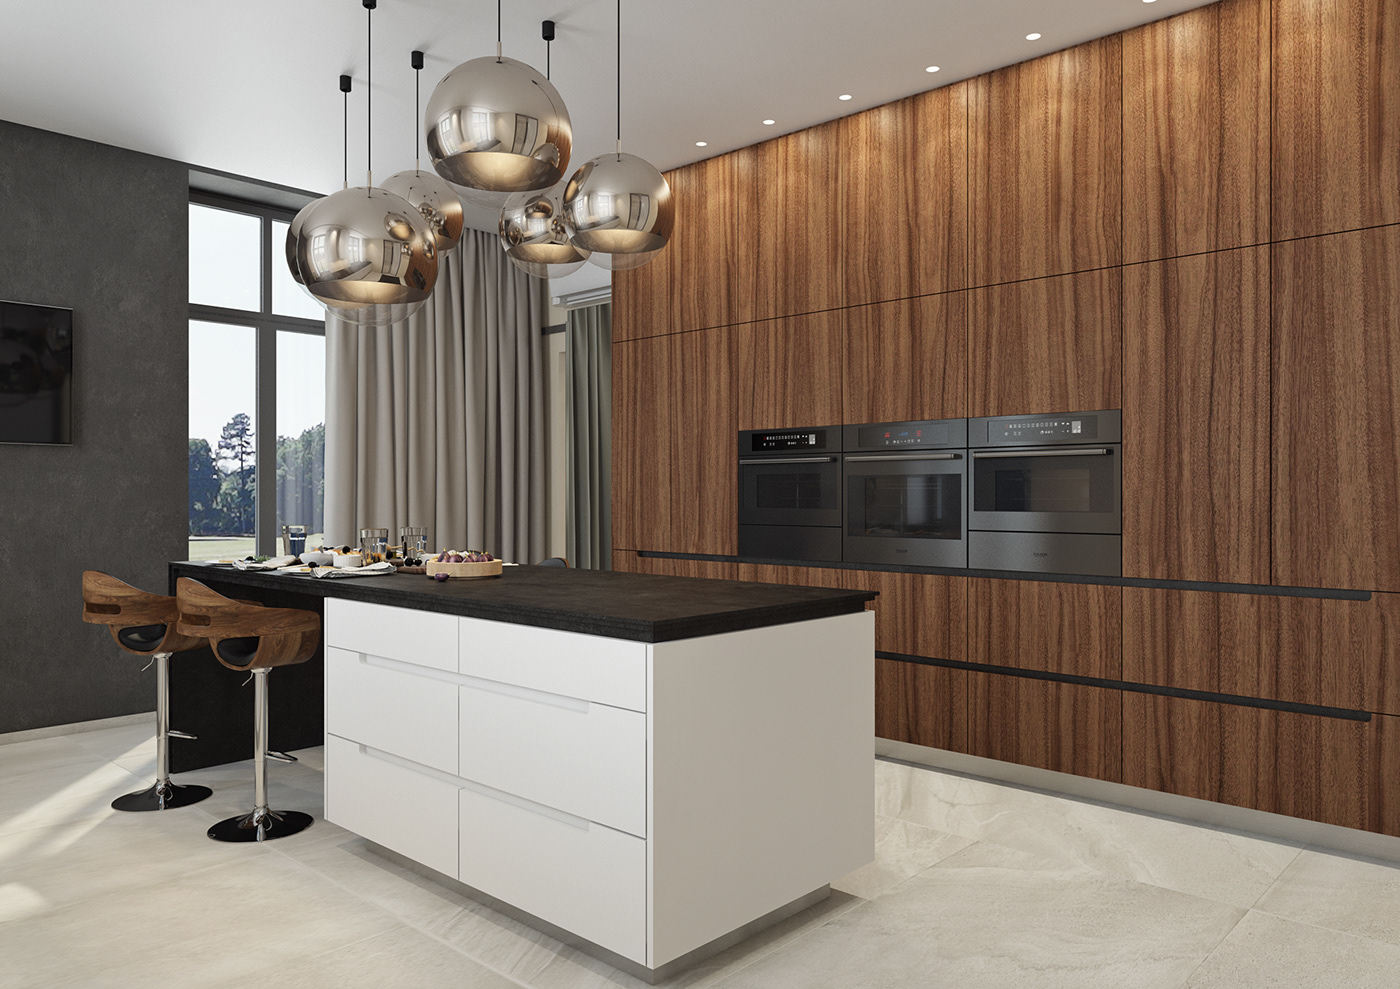 3ds max architecture archviz interior design  kitchen modern Render visualization wood wooden house